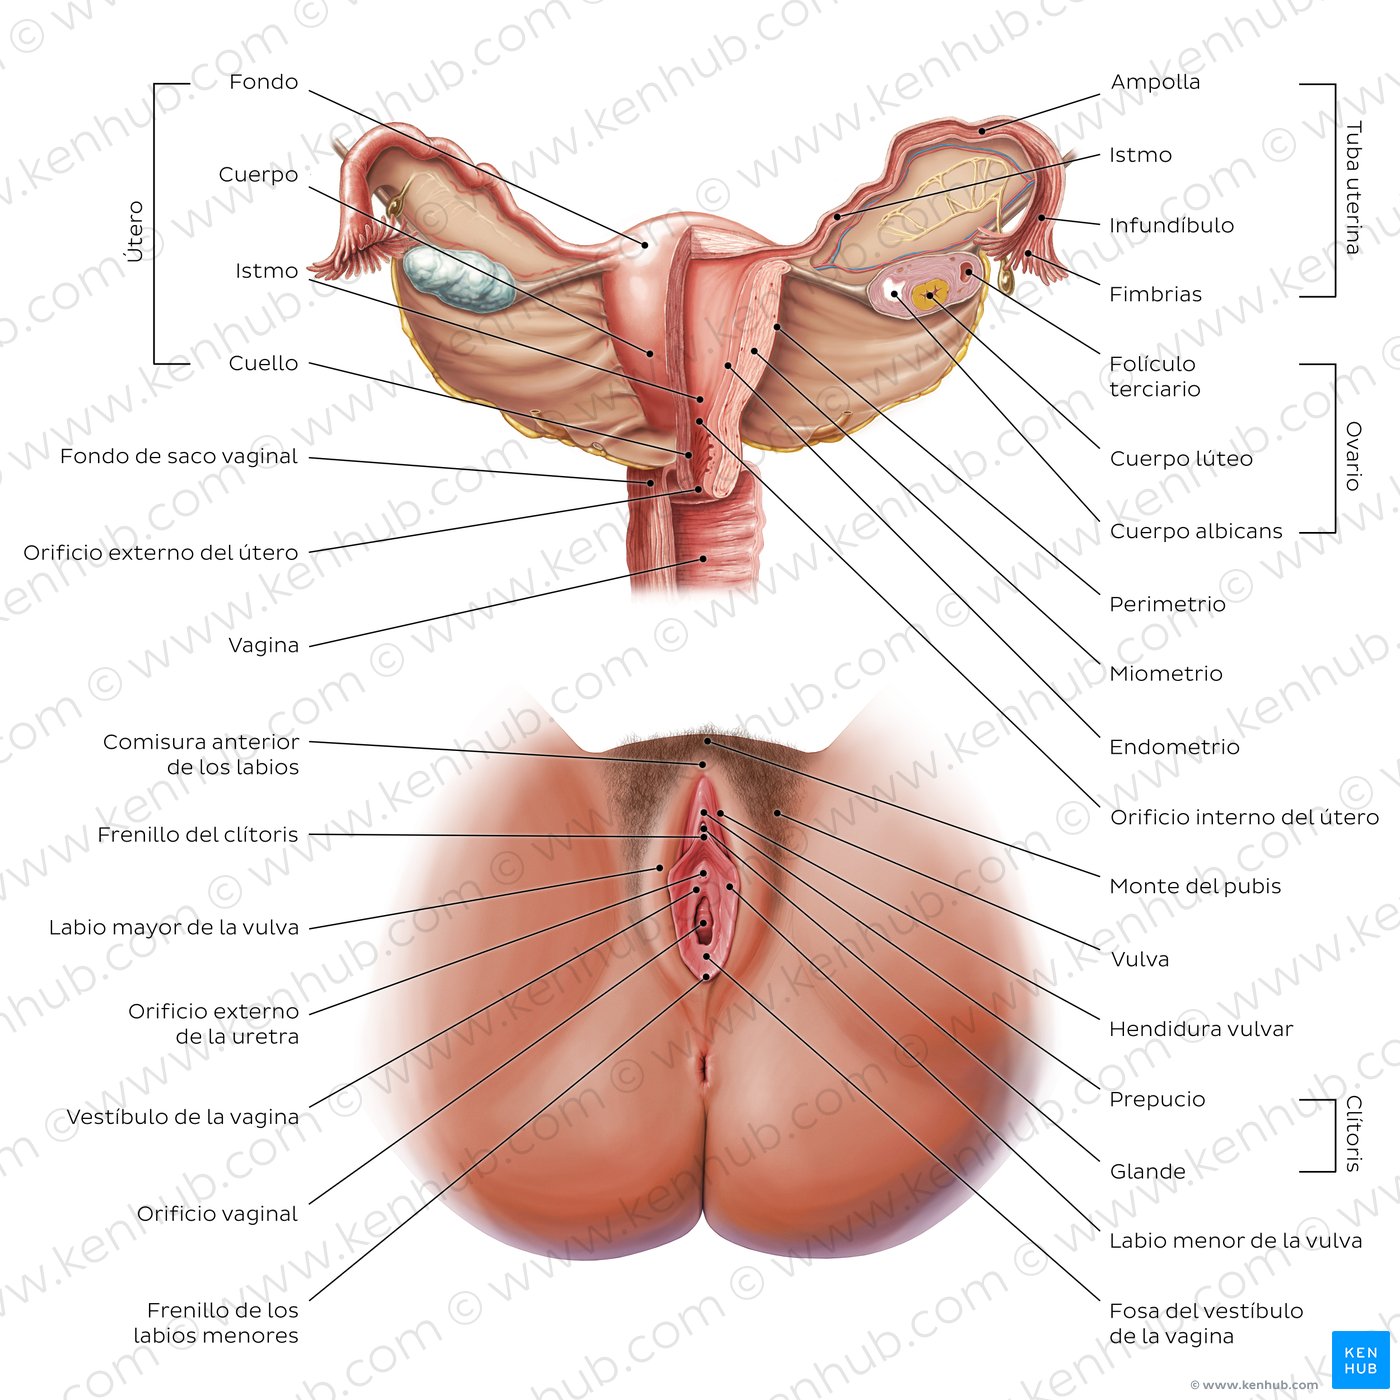 Diagrama de los órganos reproductores femeninos